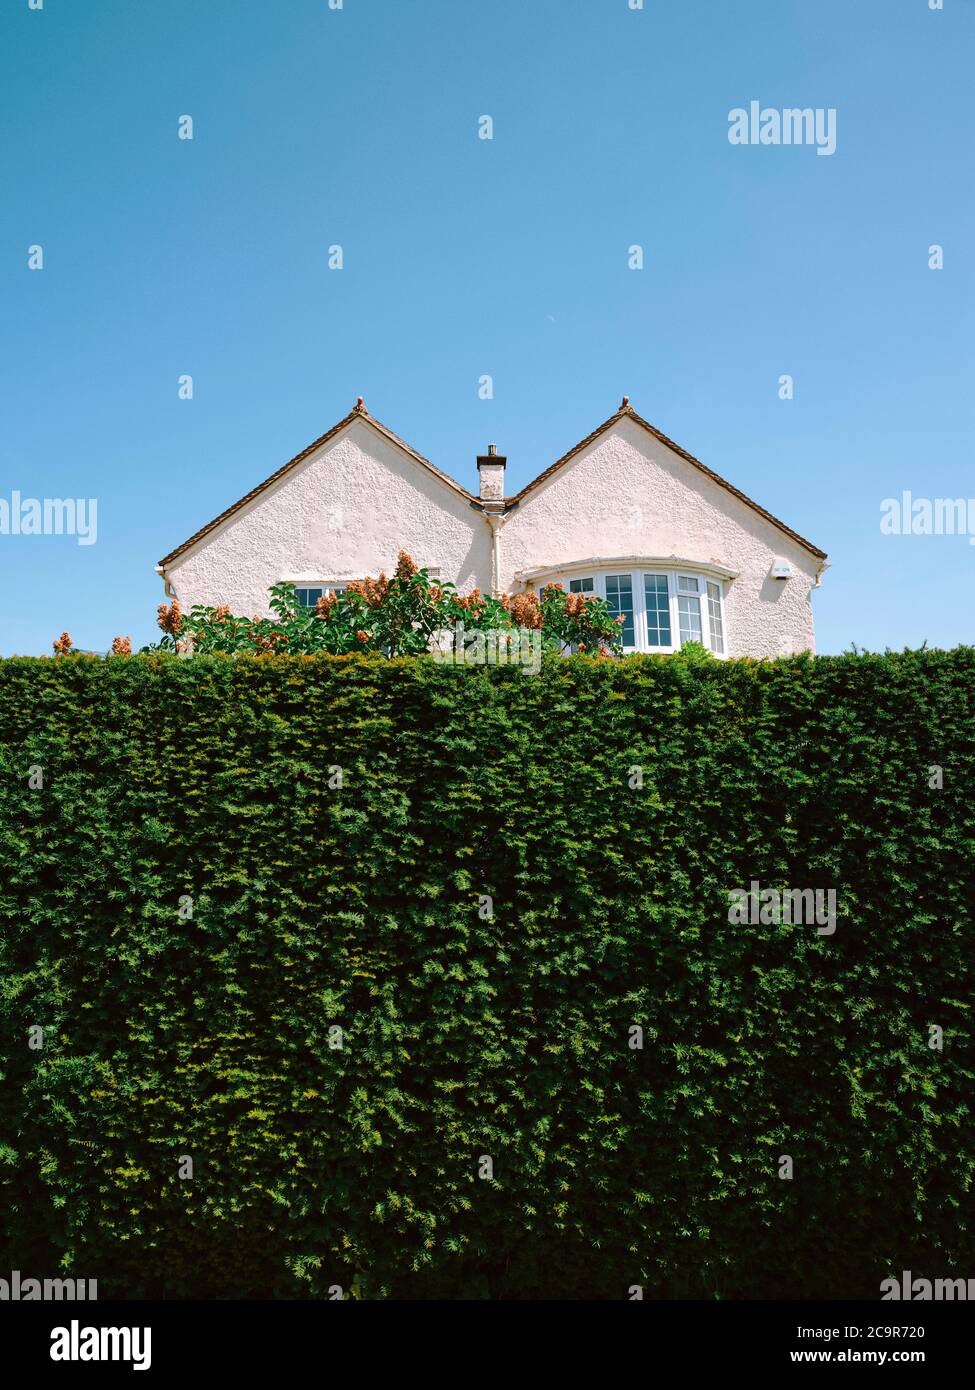 Una casa suburbana residenziale a due letti metà nascosta dietro un'alta siepe verde giardino. - tetto - casa - casa - siepe - proprietà Foto Stock